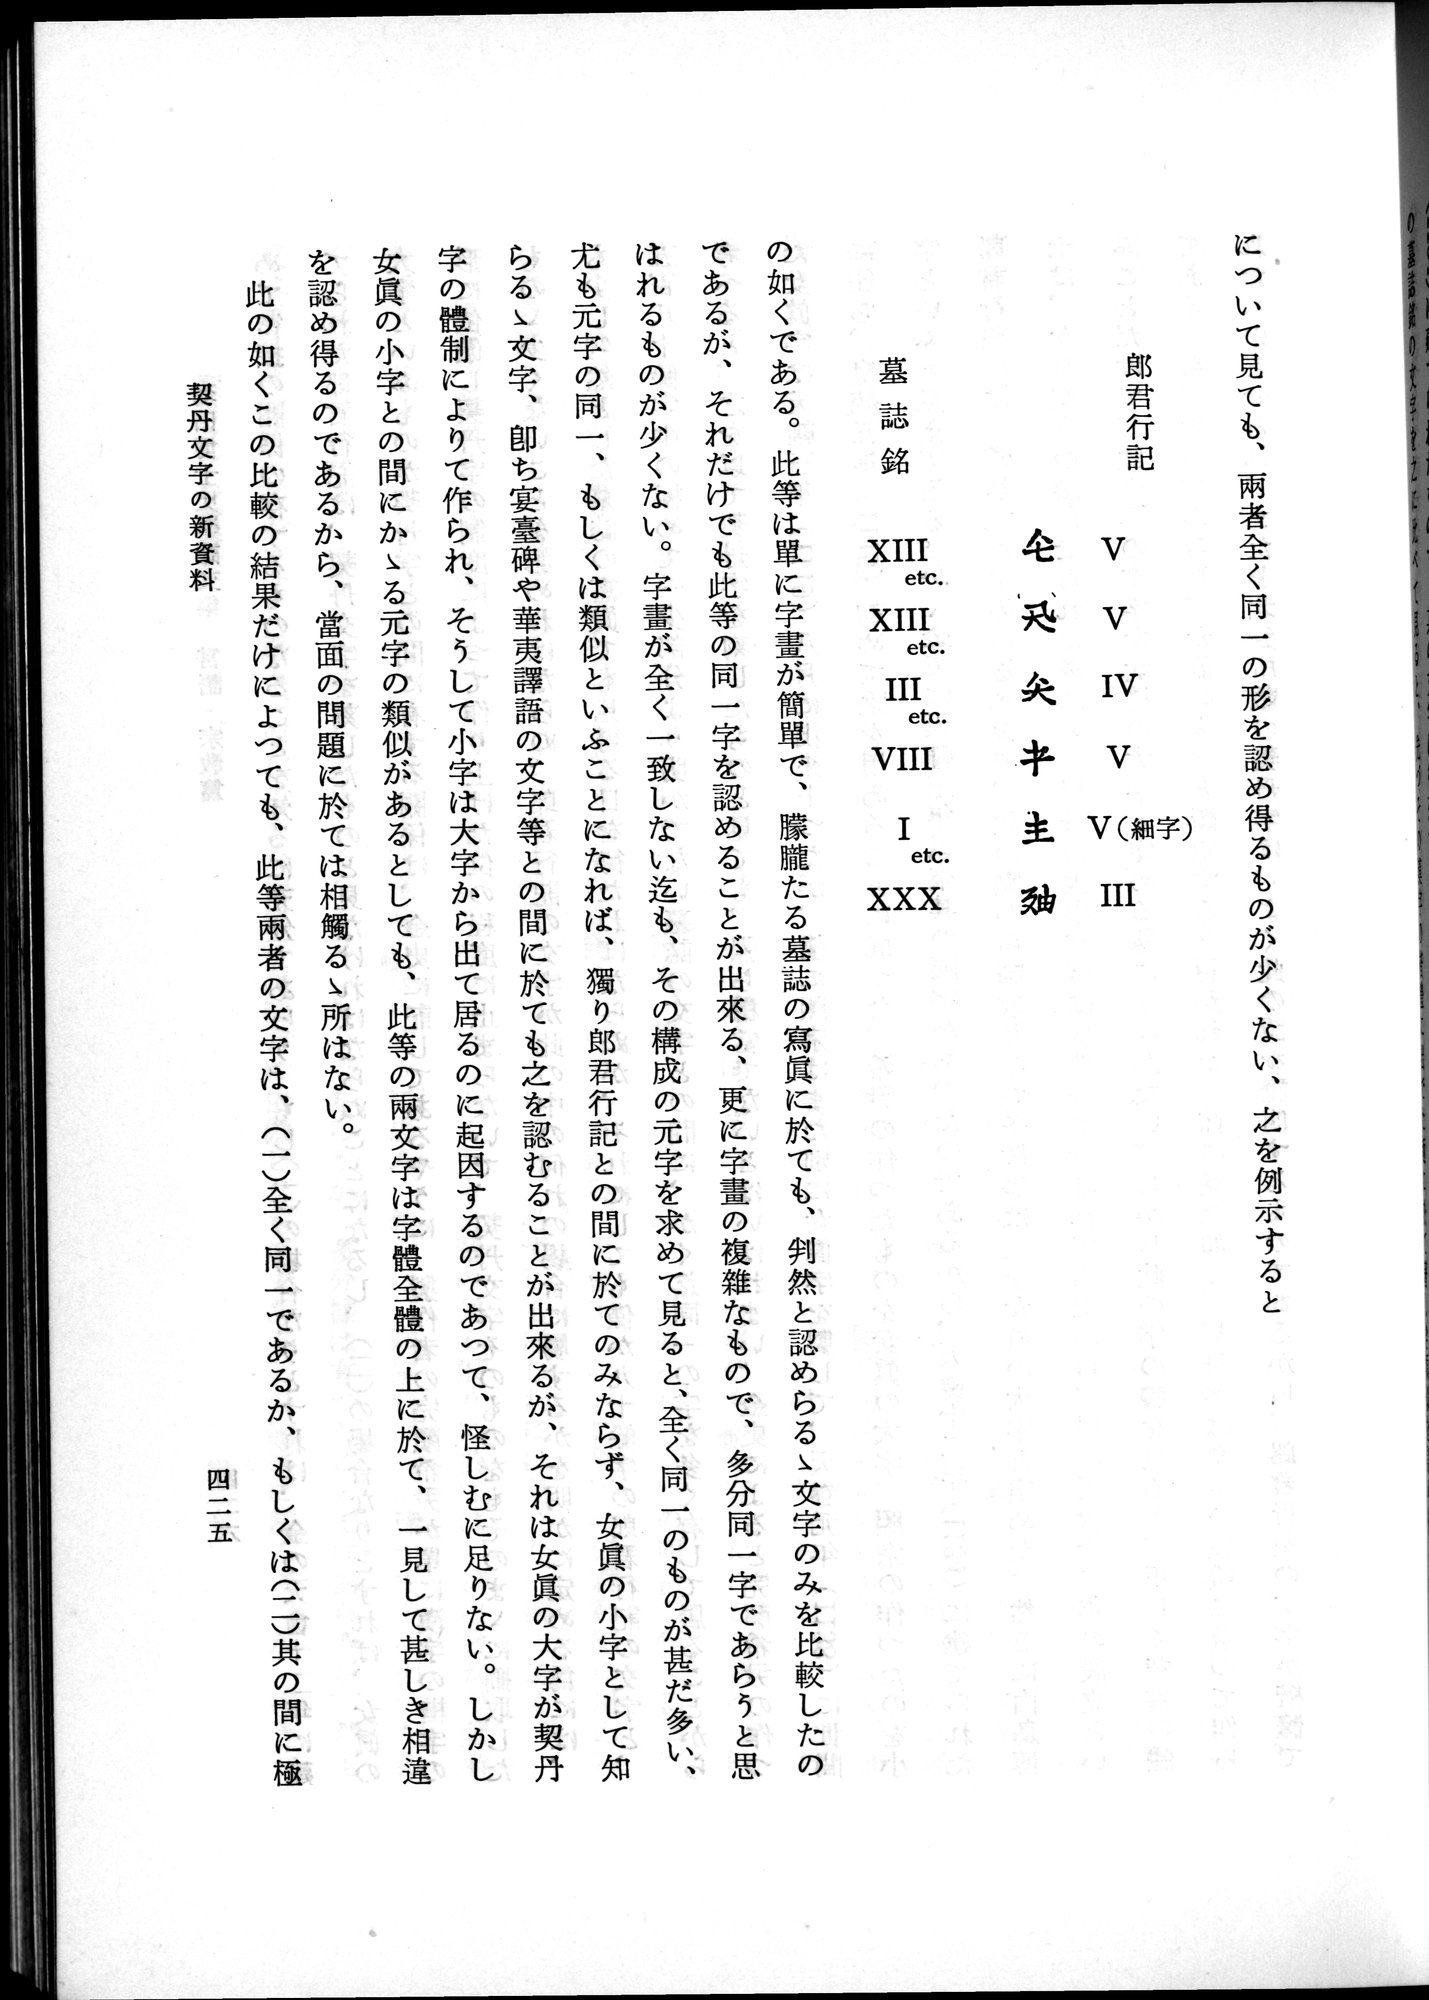 羽田博士史学論文集 : vol.2 / Page 487 (Grayscale High Resolution Image)